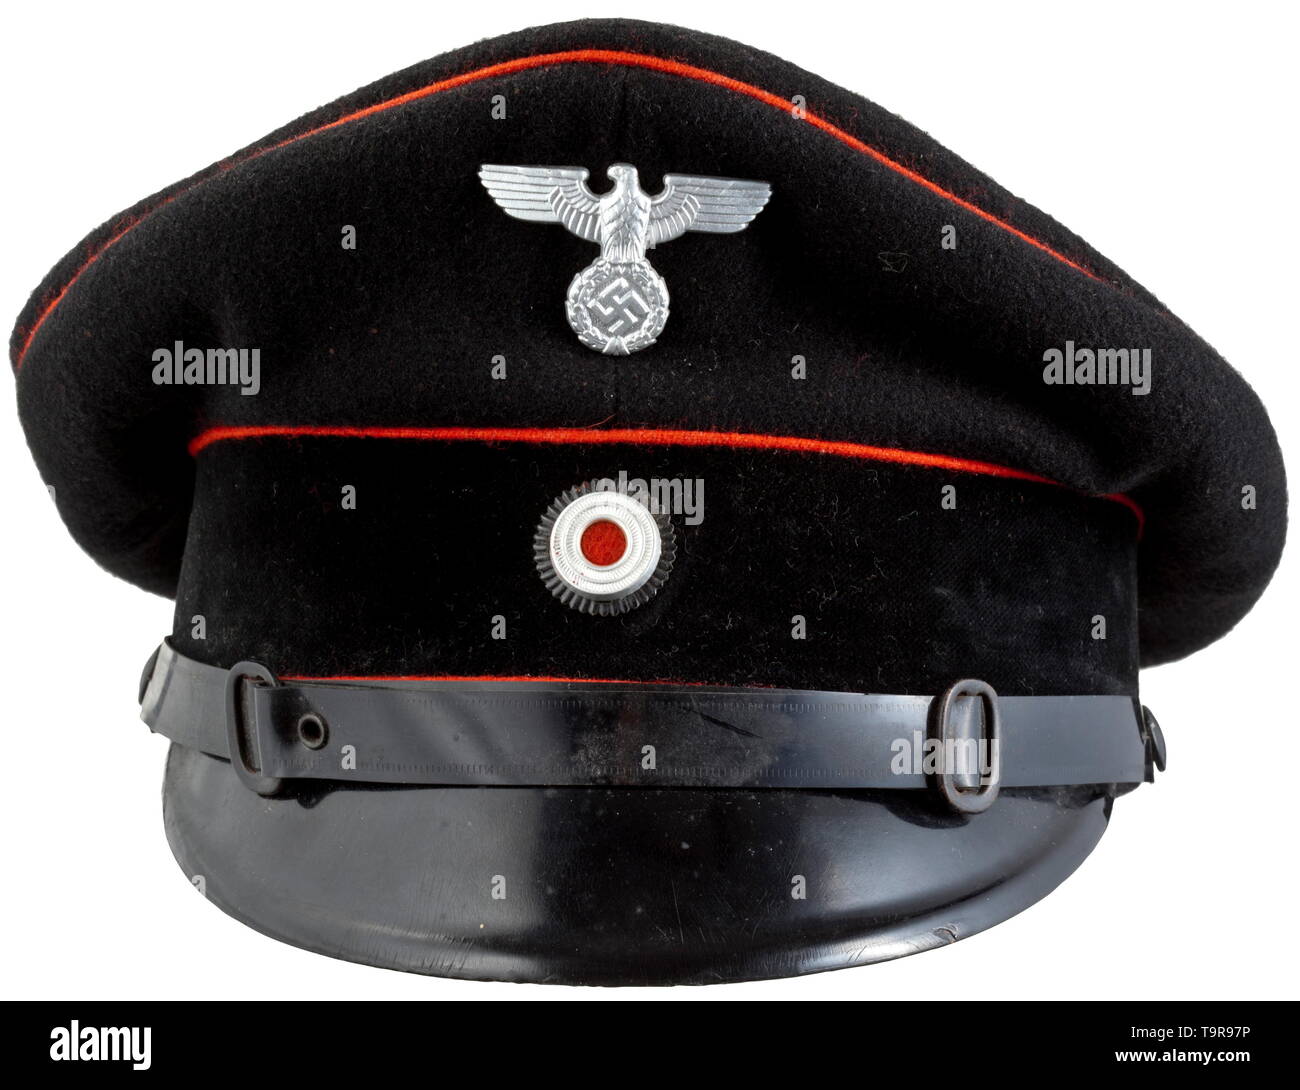 Una visiera berretto per i membri dei vigili del fuoco atti Weimar storico modello, storico del XX secolo, Additional-Rights-Clearance-Info-Not-Available Foto Stock